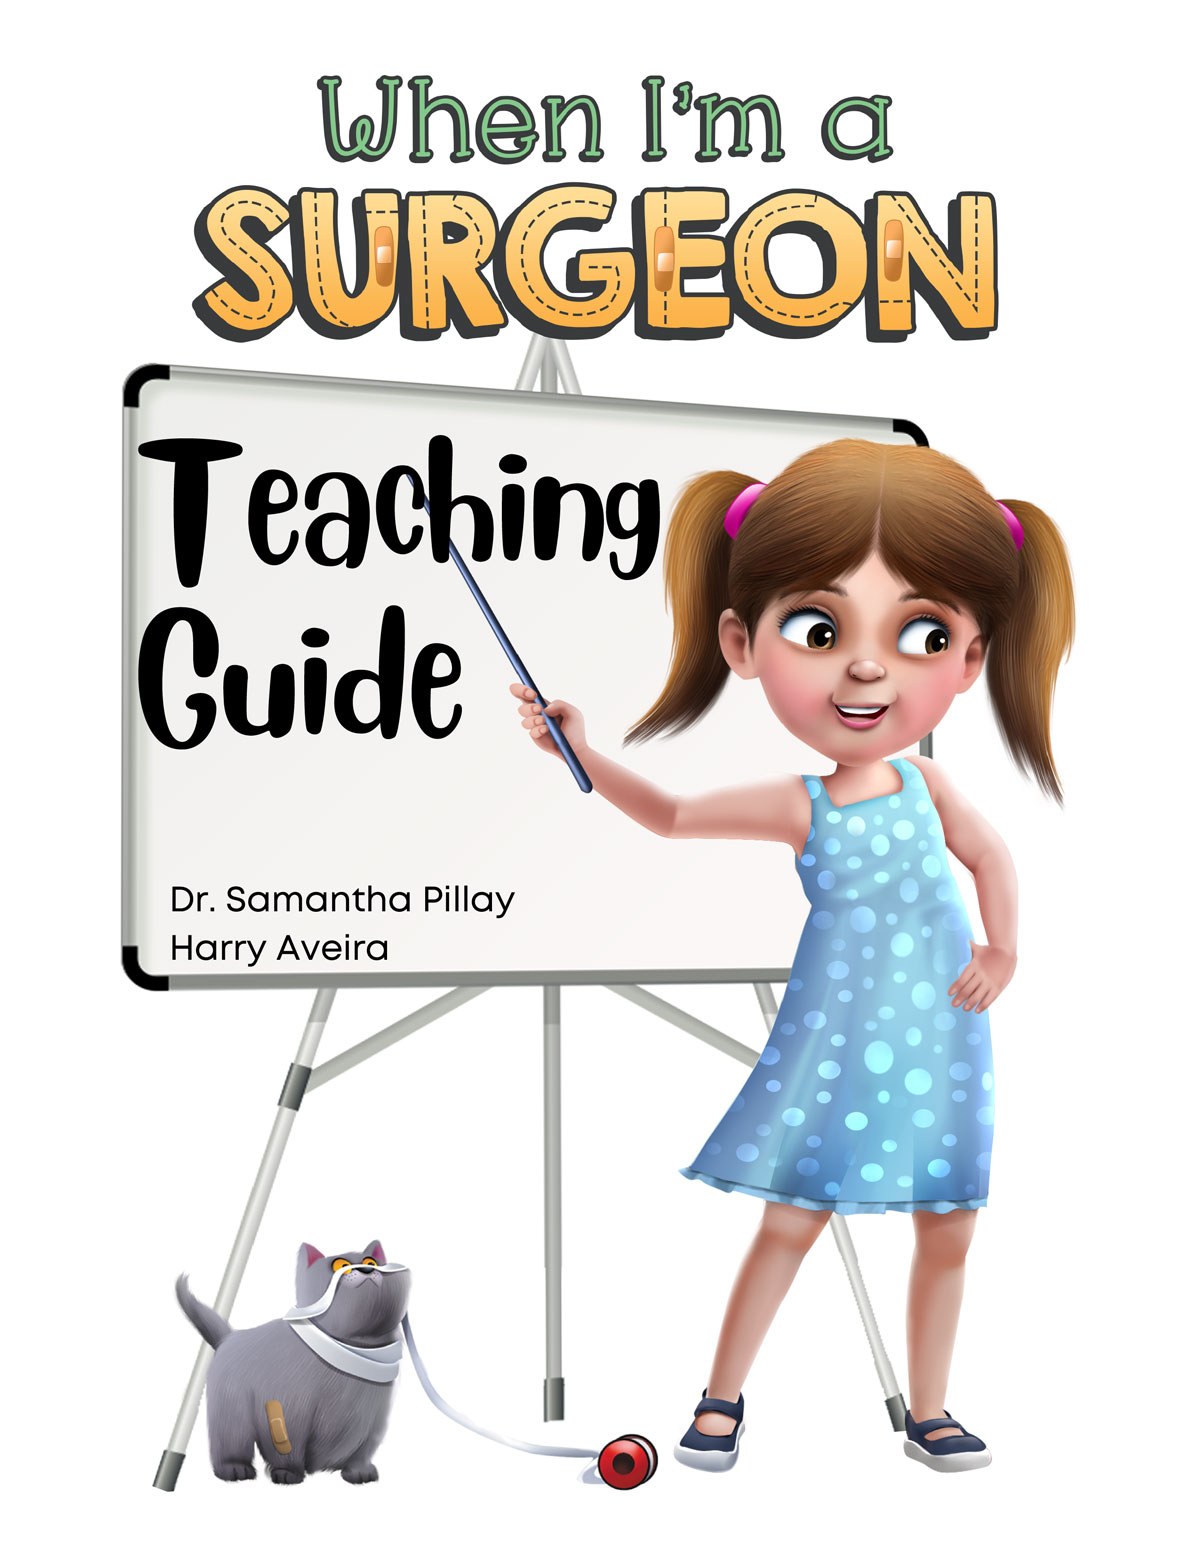 When Im A Surgeon Teaching Guide Final3 1